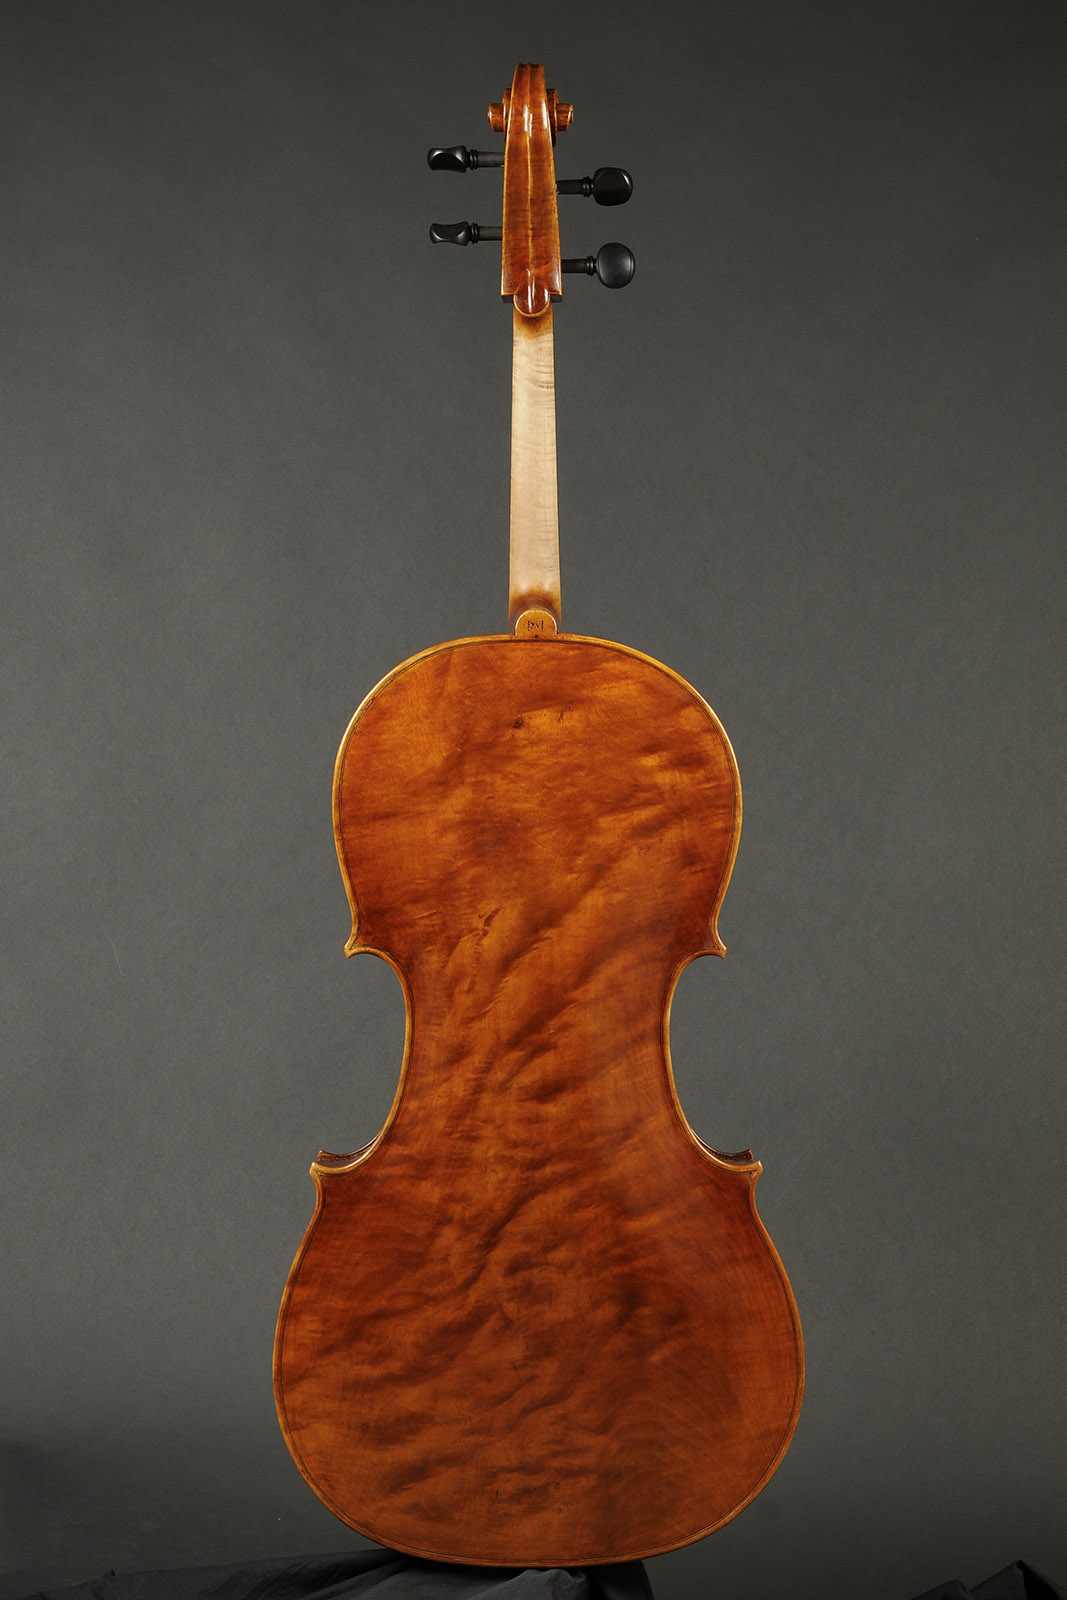 Antonio Stradivari Cremona 1730 “Feuermann“ “Fondo Unico“ - Image 2